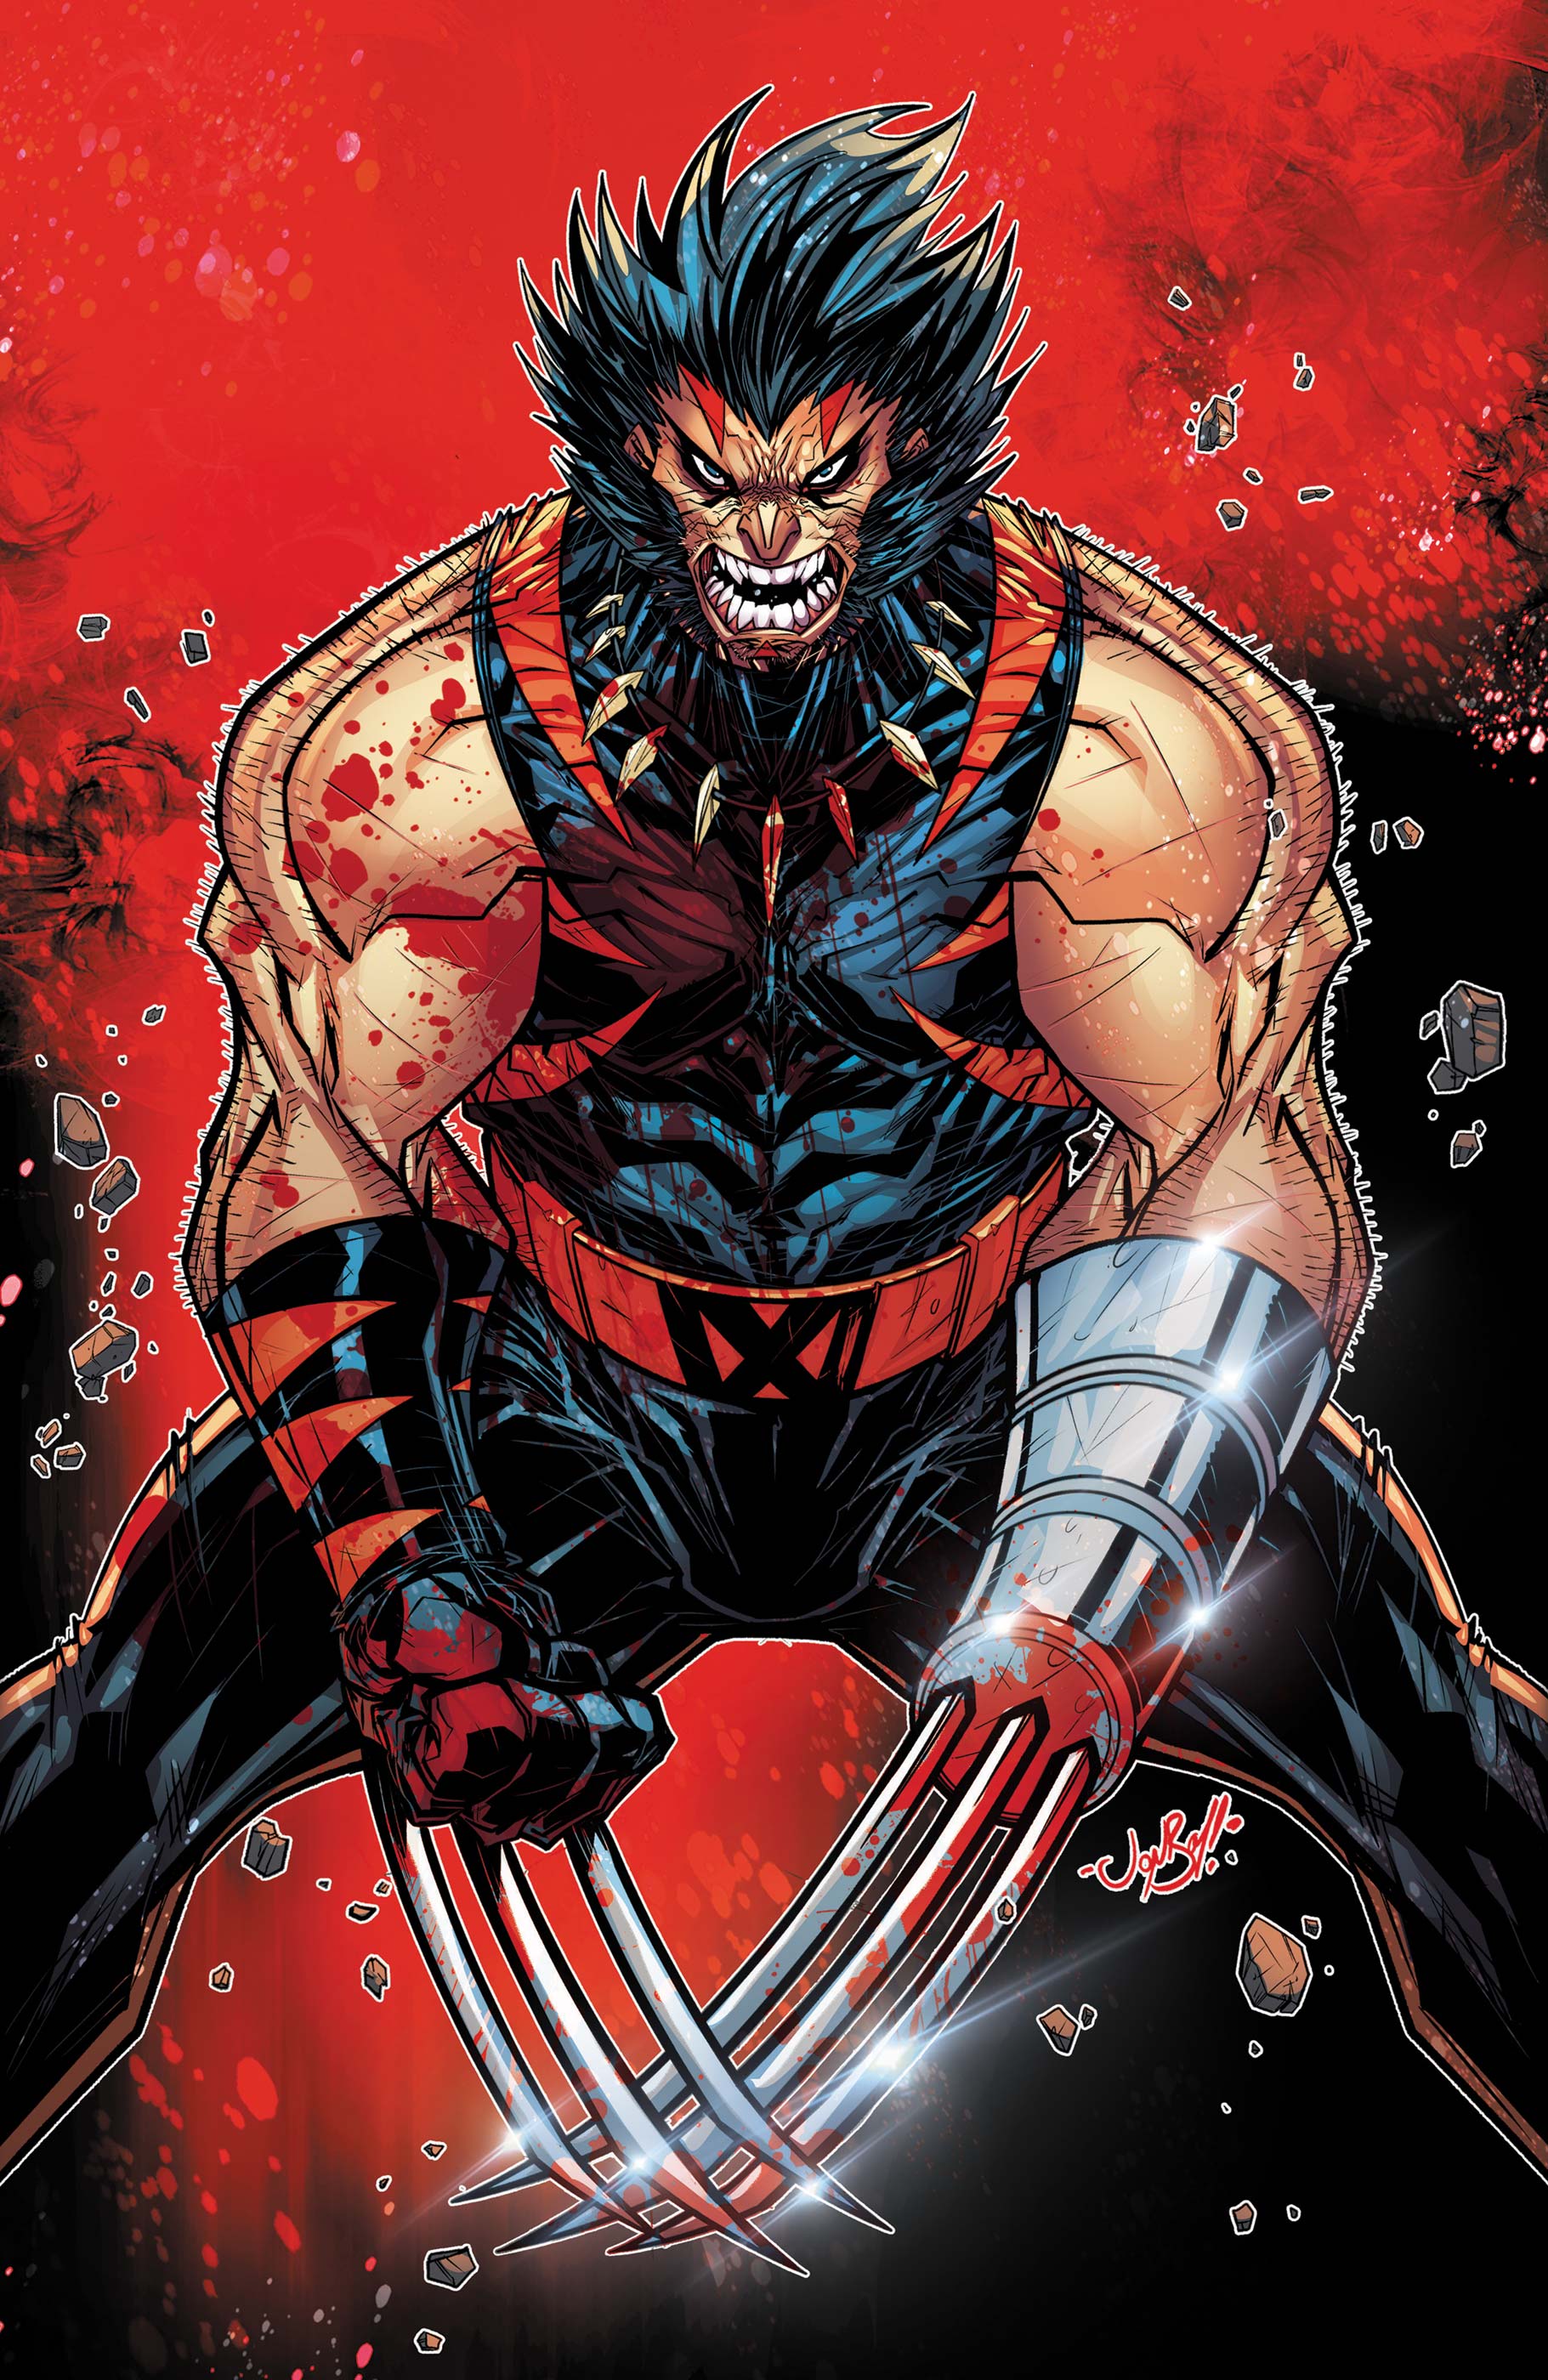 Weapon X-Men (2024) #1 (Variant)